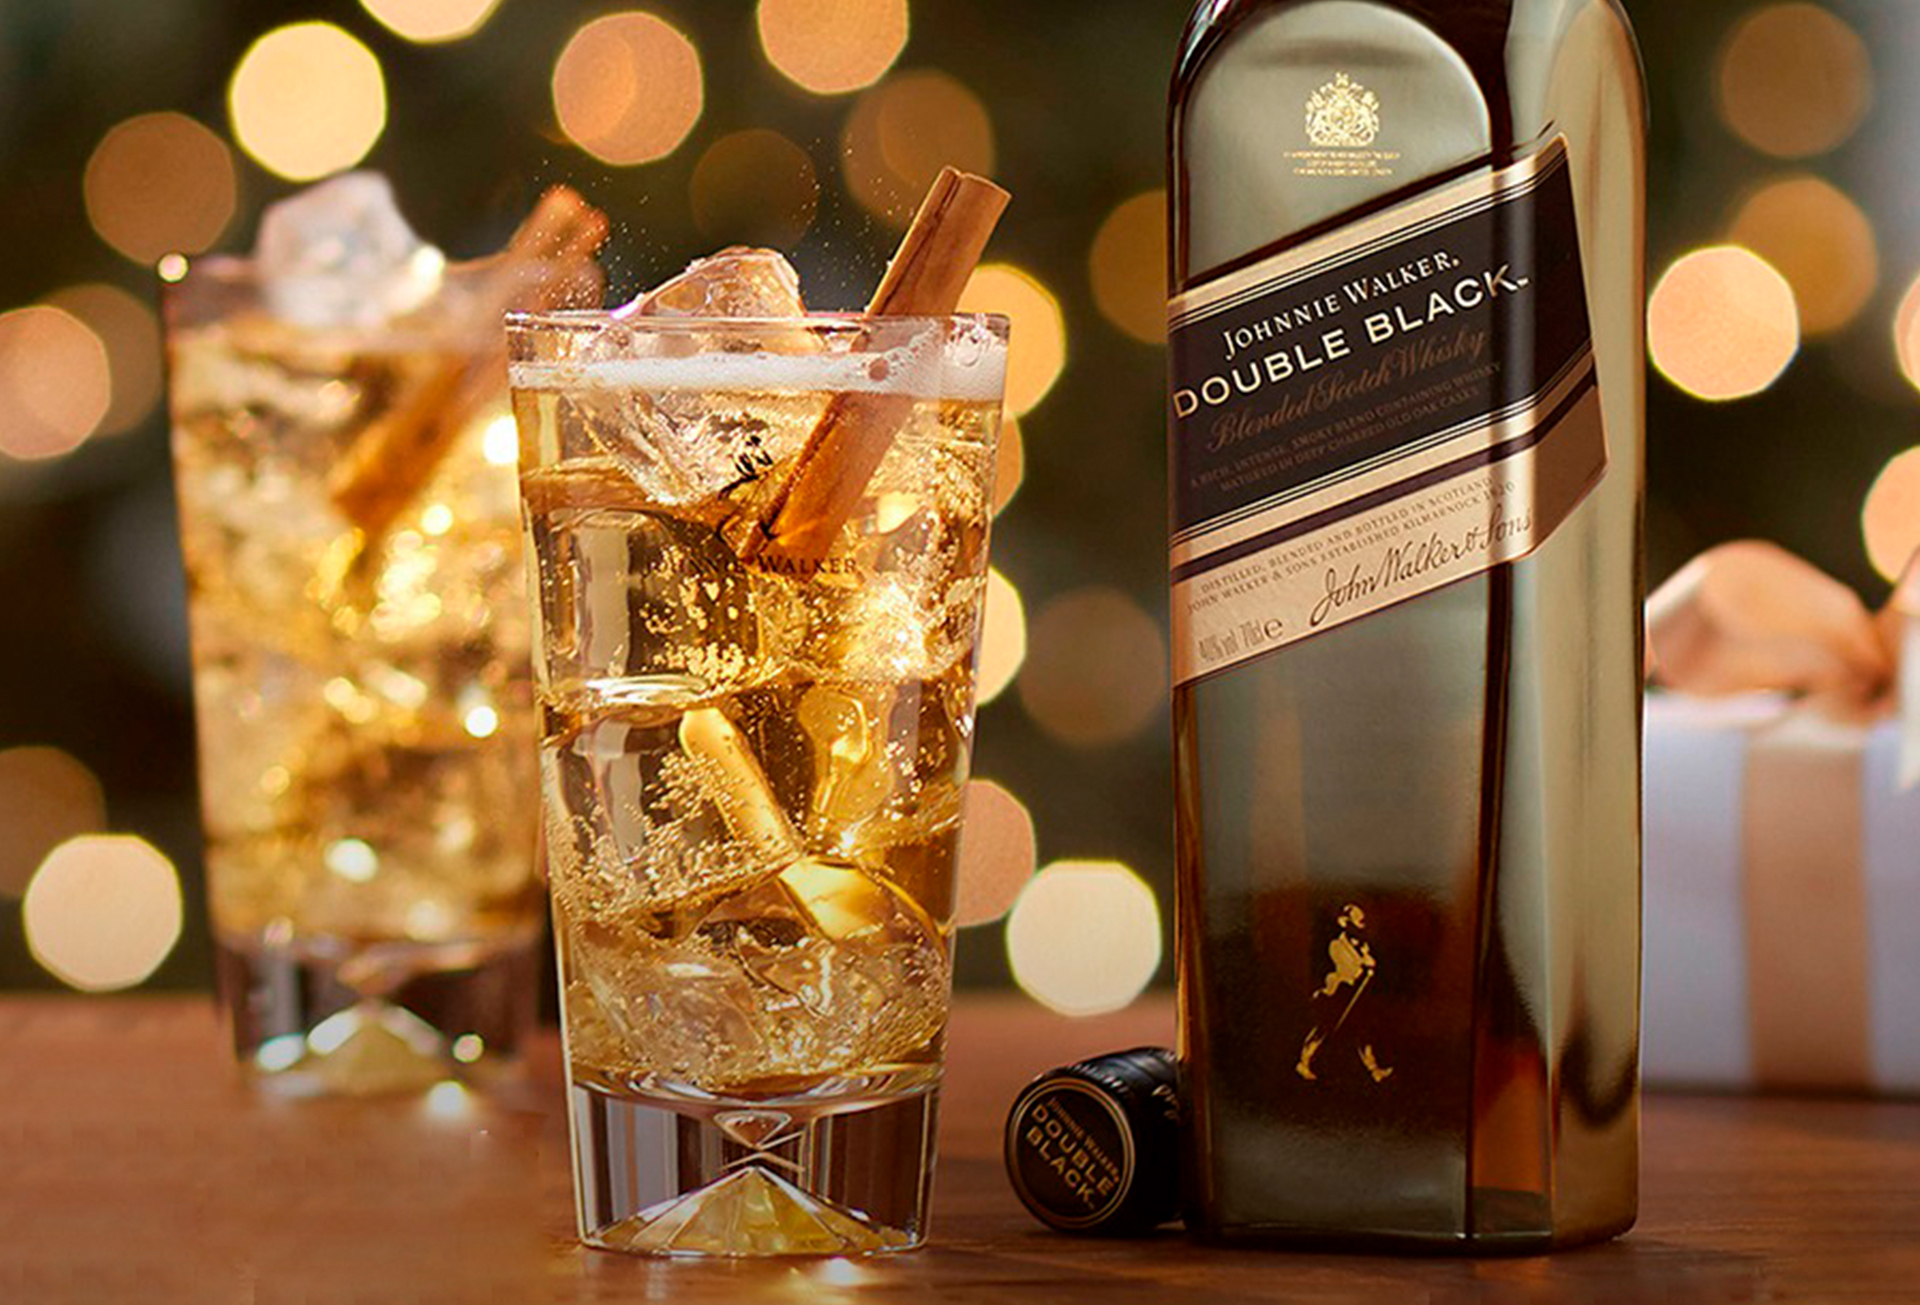 Garrafa Johnnie Walker Double Black 1L com um copo alto e whisky.